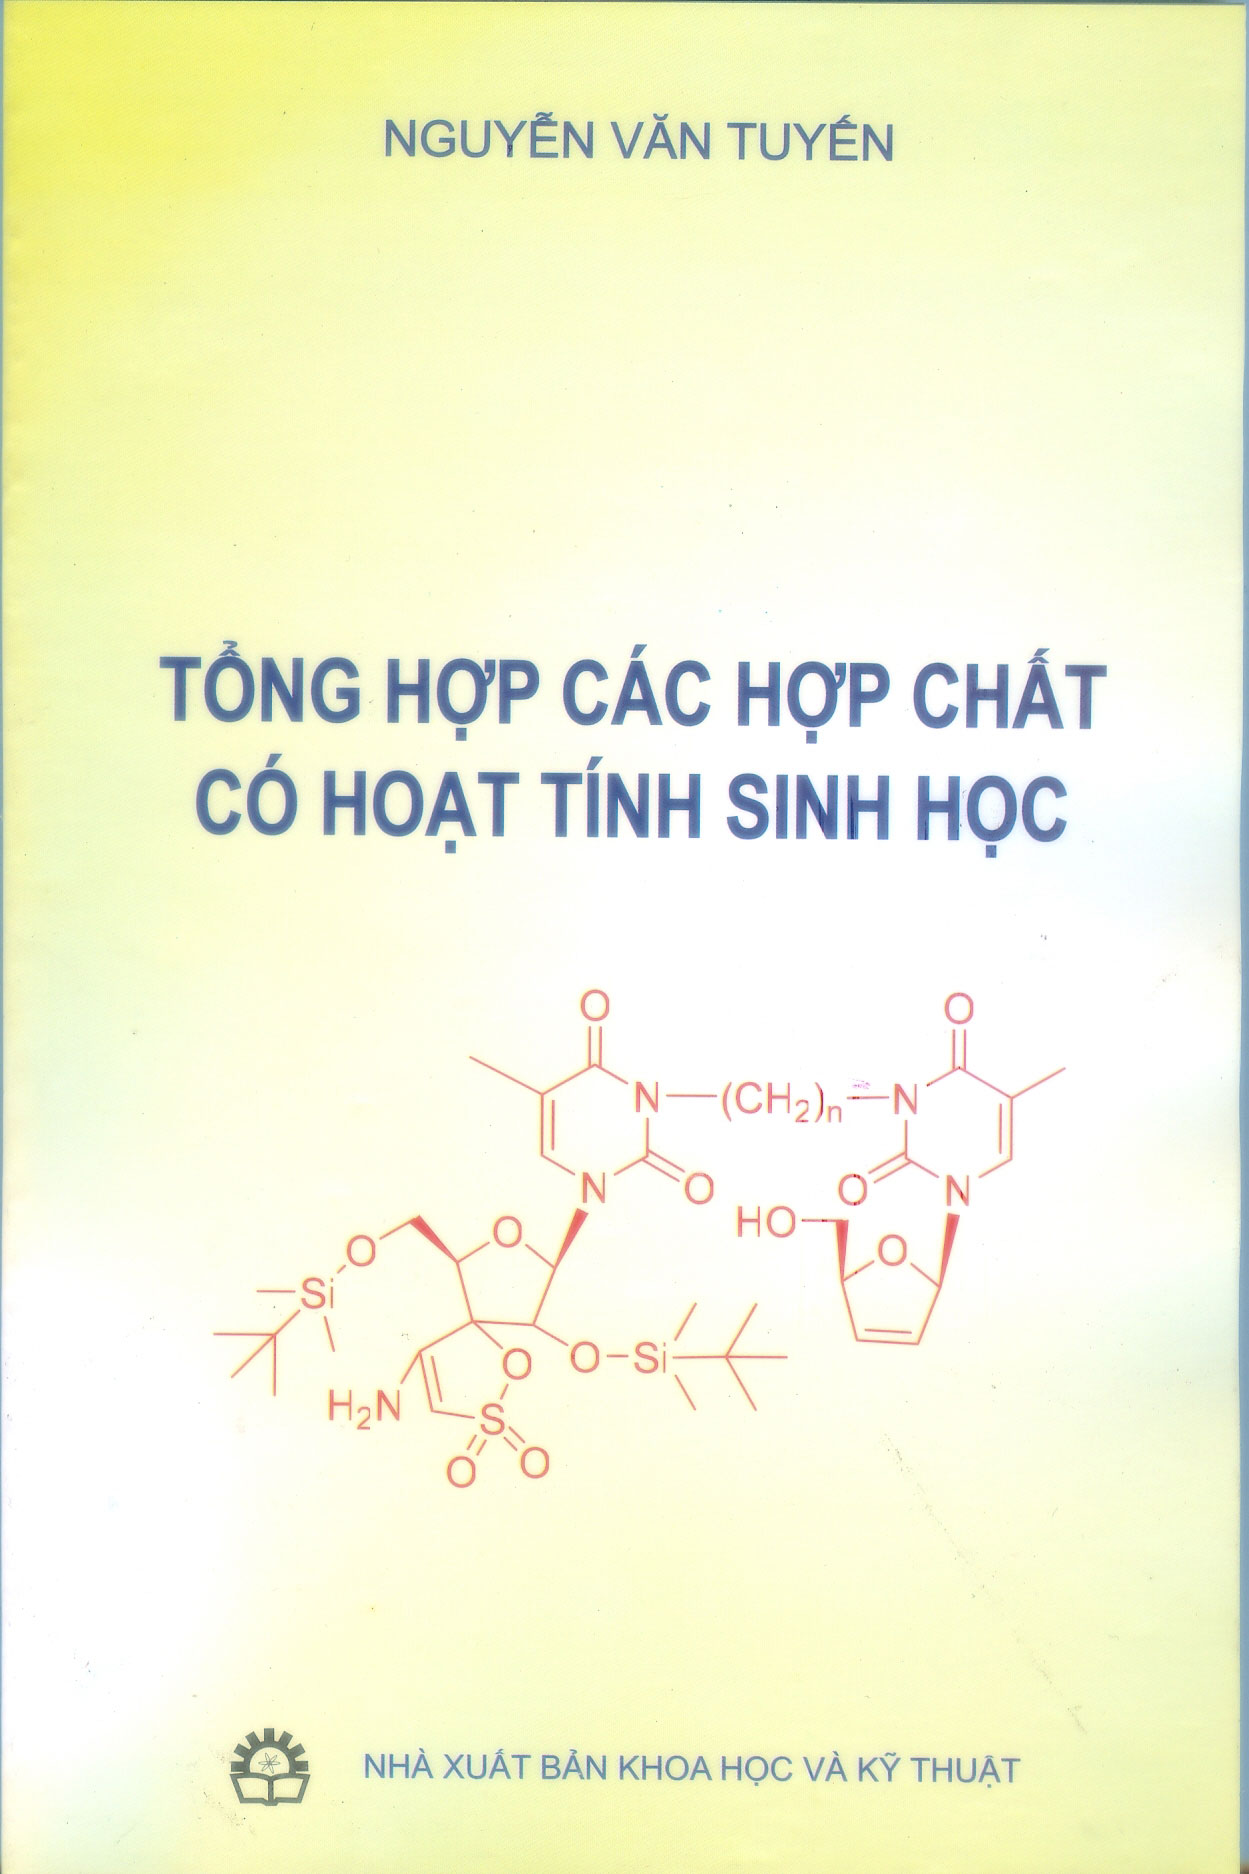 Tong hop cac chat co HTSH